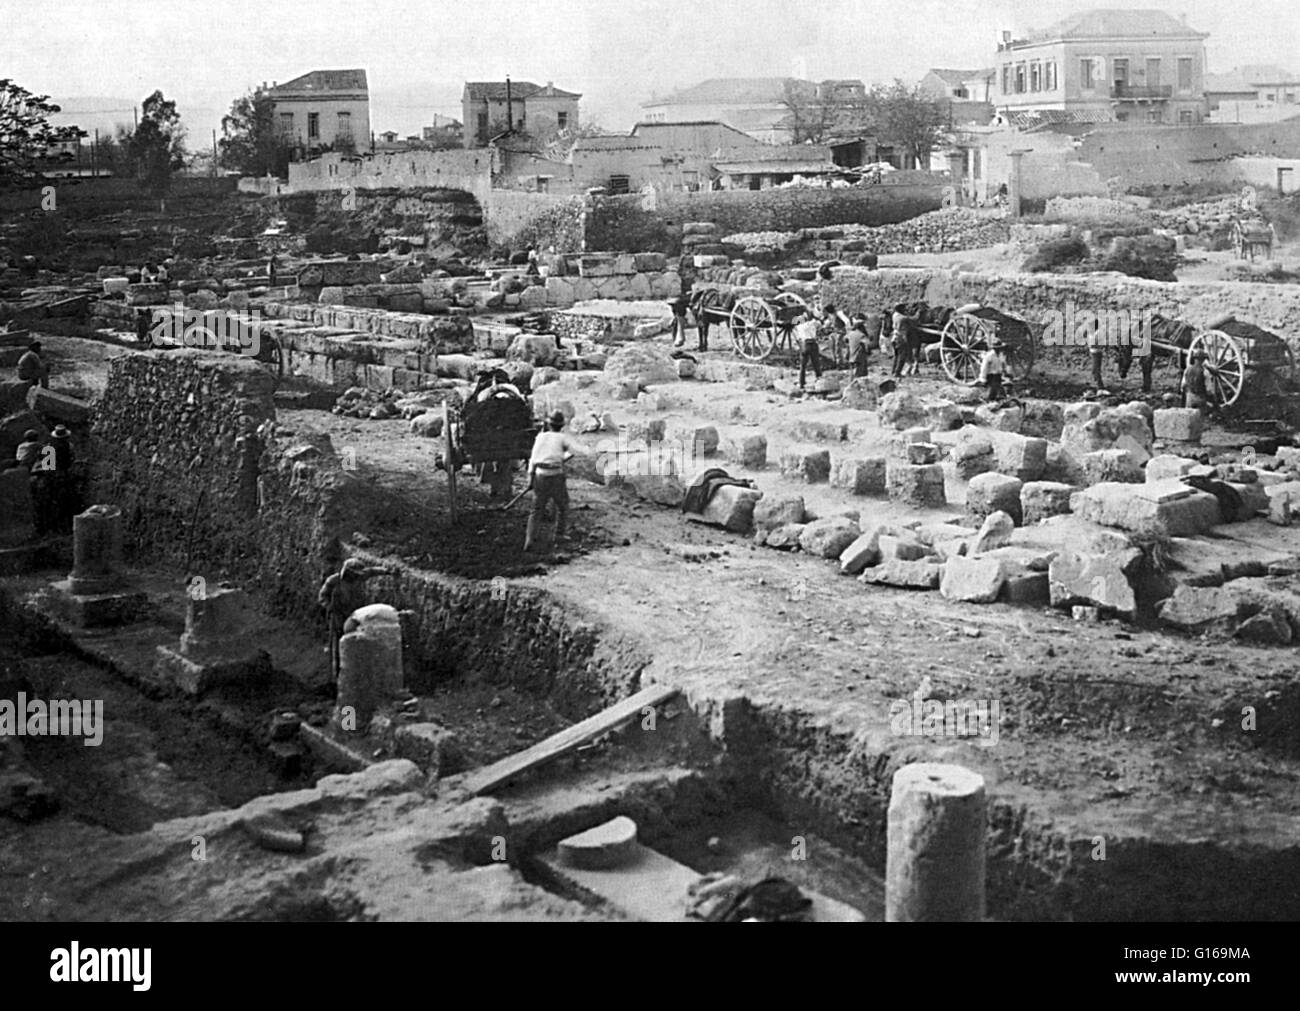 L'excavation de l'Pompeion au début du 20e siècle, la station de Keramikos. Keramikos est une région d'Athènes, Grèce, situé au nord-ouest de l'Acropole. C'était le quartier des potiers de la ville, d'où le mot anglais 'plaque' est dérivé. Pendant la période classique, un important bâtiment public, le Pompeion, se tenait à l'intérieur des murs dans la zone située entre les deux portes. Cela a servi une fonction clé dans la procession en l'honneur d'Athéna pendant la Festival Panathénaïque. Il était constitué d'une grande cour entourée de colonnes et de salles de banquets, lieux où la noblesse d'Athènes serait Banque D'Images